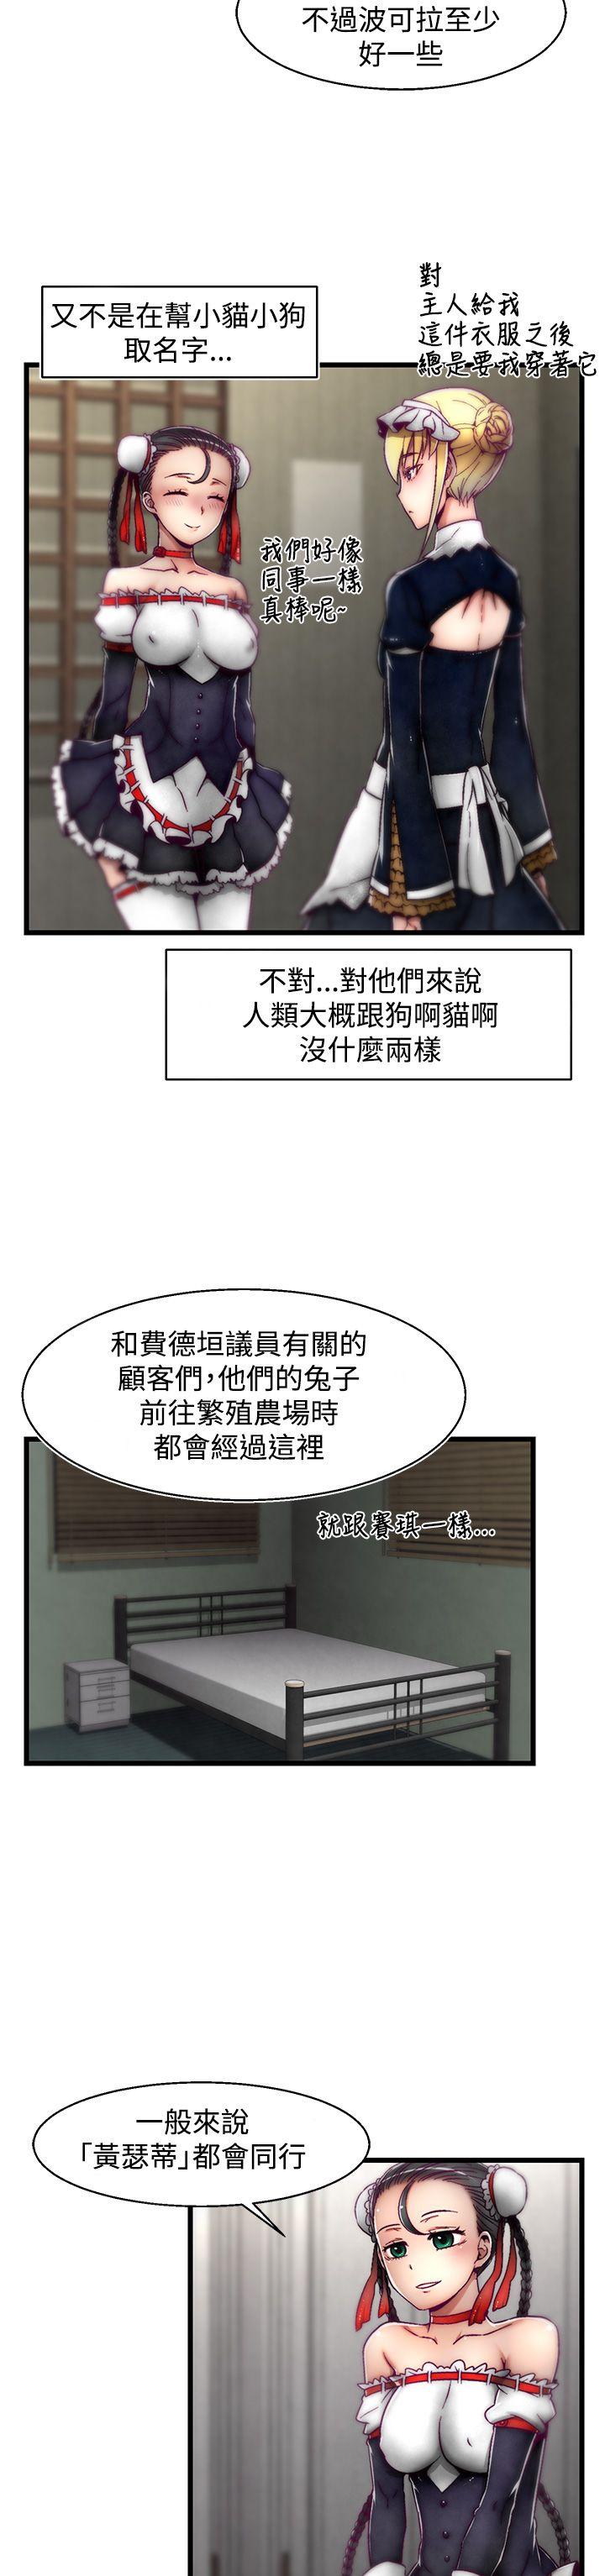 韩国污漫画 啪啪啪調教所 第10话(第2季) 7